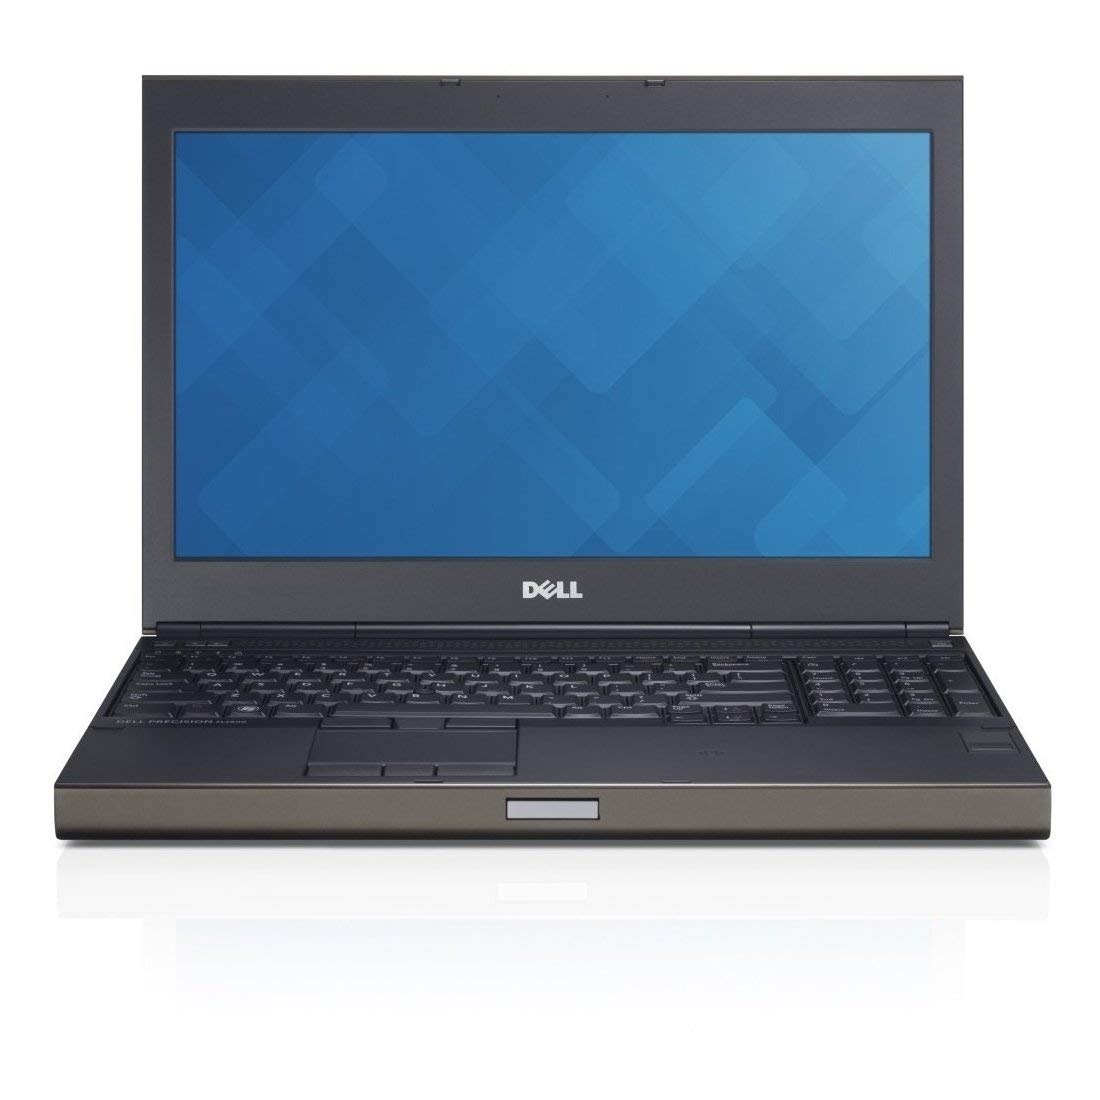 Laptop Dell Precision M4800, Intel Core i7-4810MQ 2.80GHz, 8GB DDR3, 240GB SSD, Tastatura Numerica, 15.6 Inch